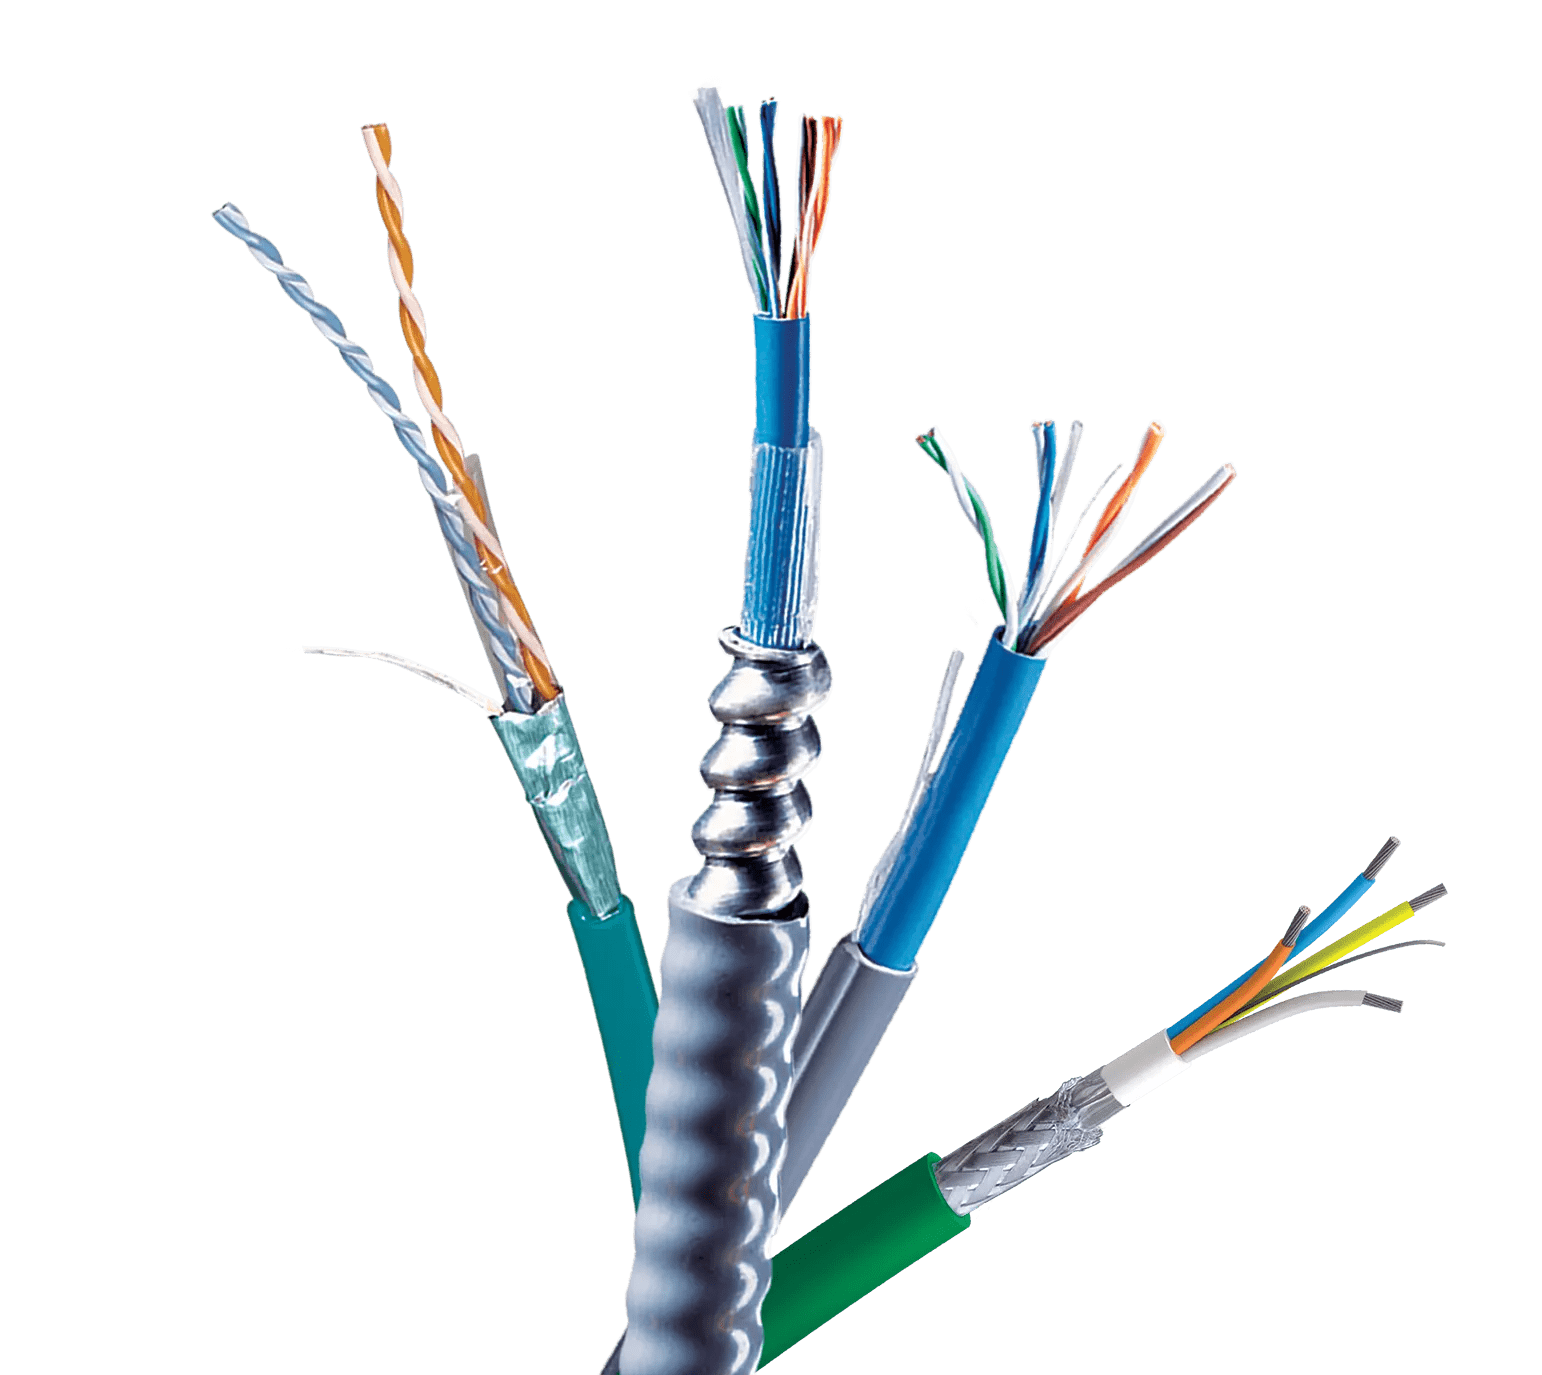 Câbles réseau Ineck ® Câbles réseau blindé catégorie 5 FTP avec 2